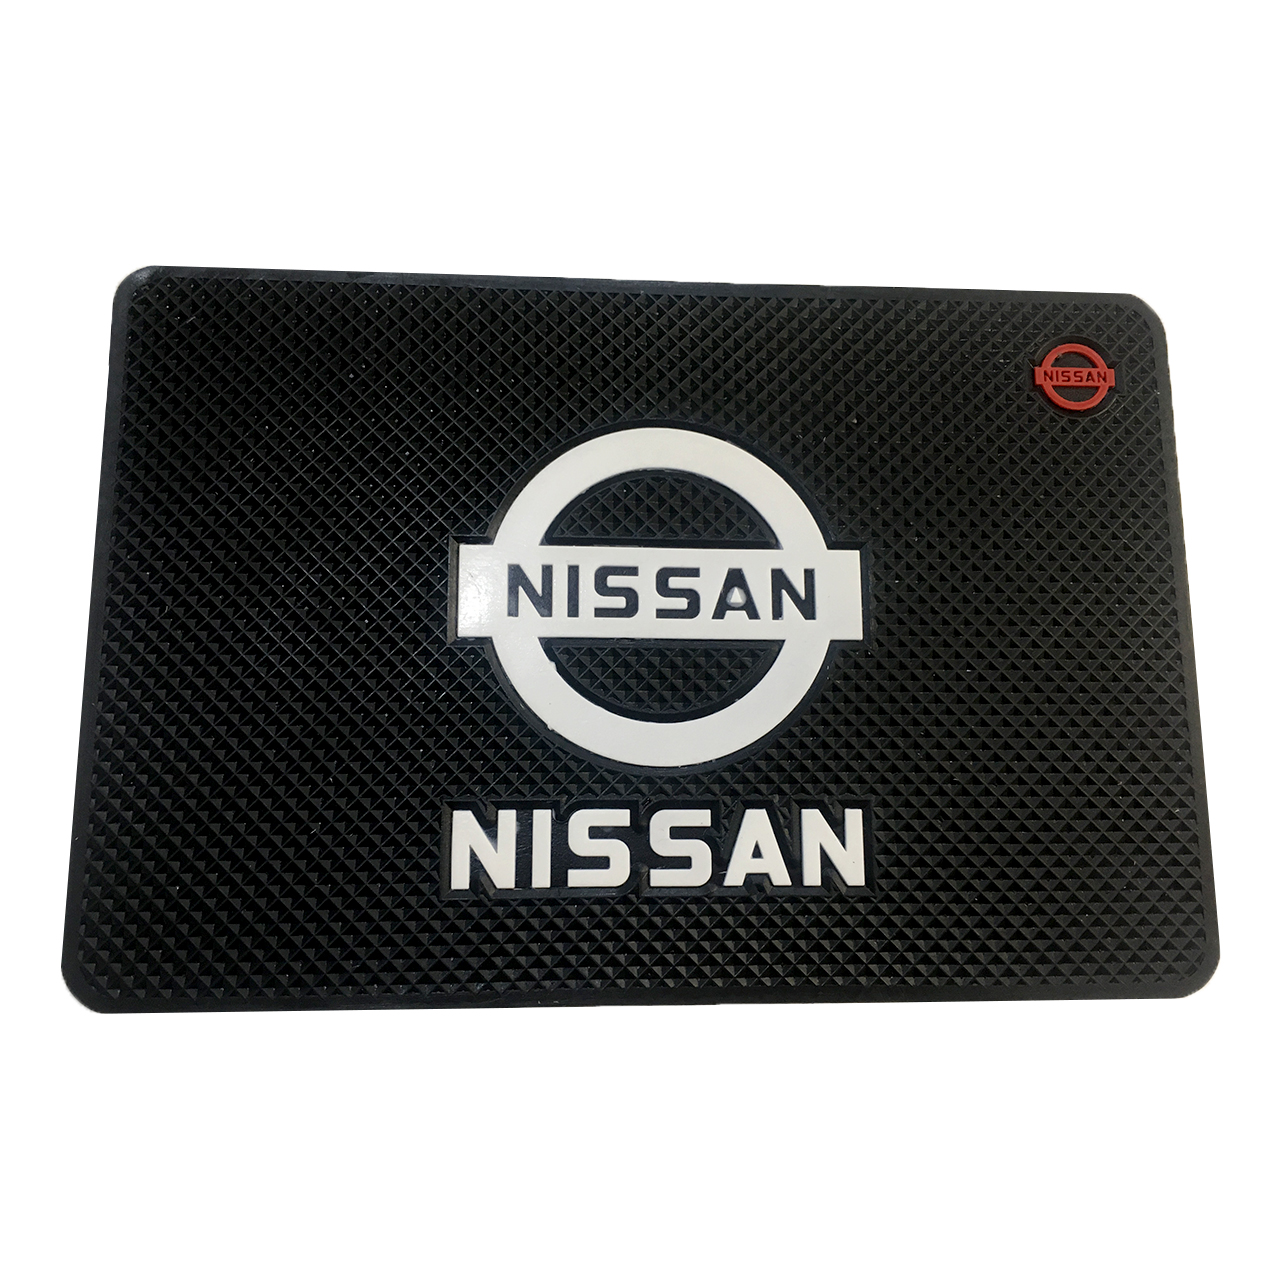 پد نگهدارنده اشیاء داخل خودرو طرح NISSAN مدل NS05